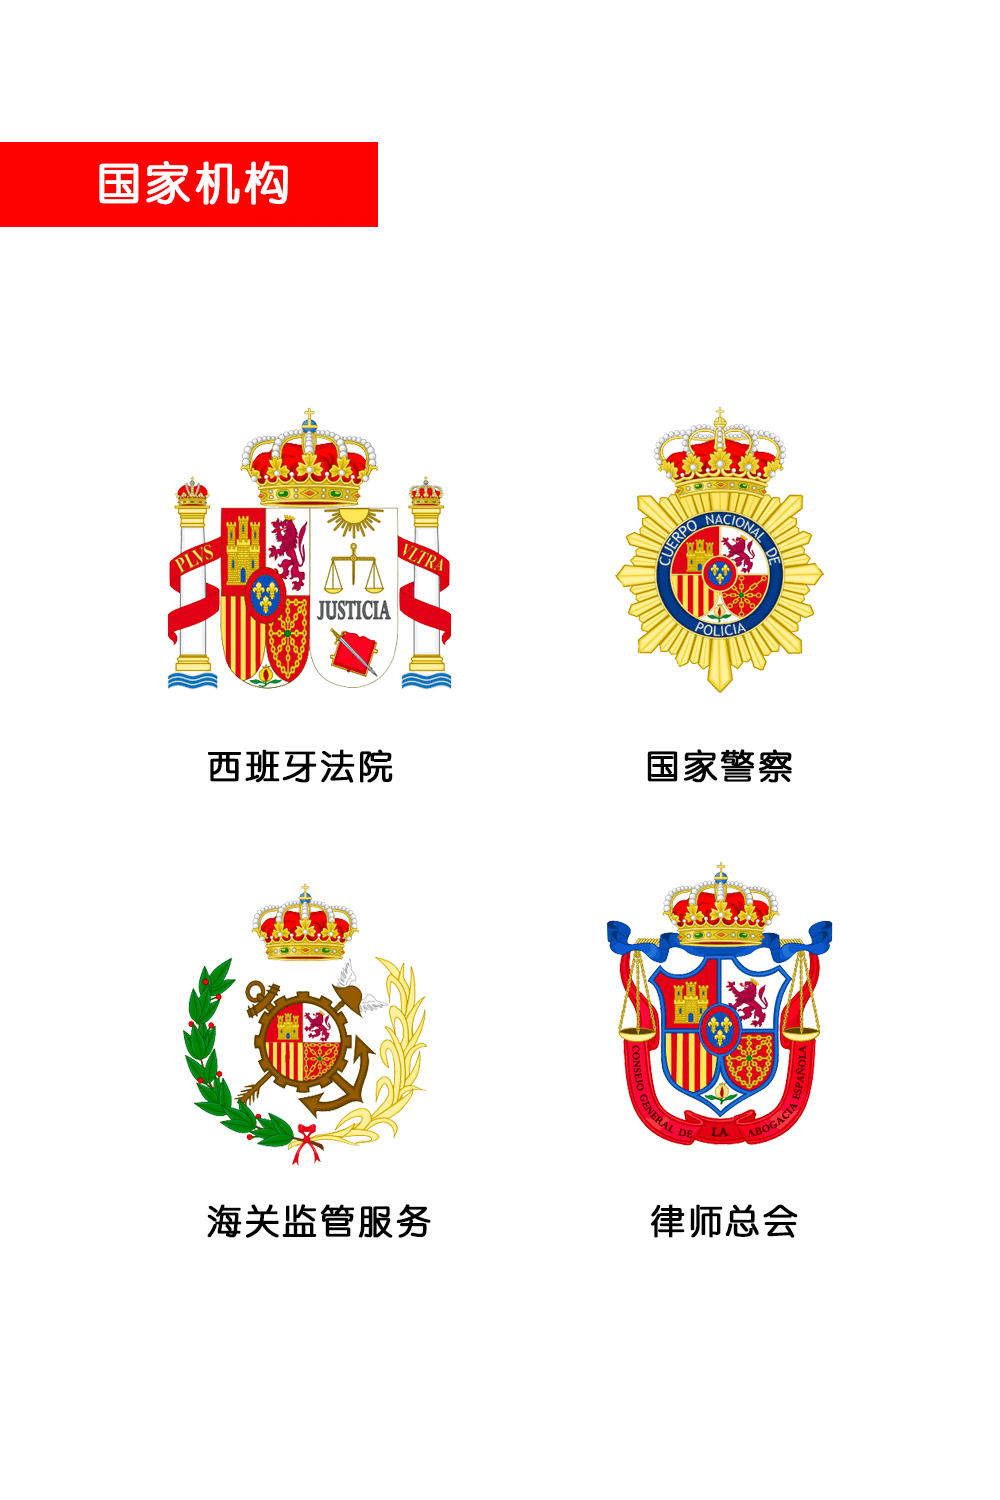 西班牙国徽中元素及意义 I 政府机构徽标(图4)